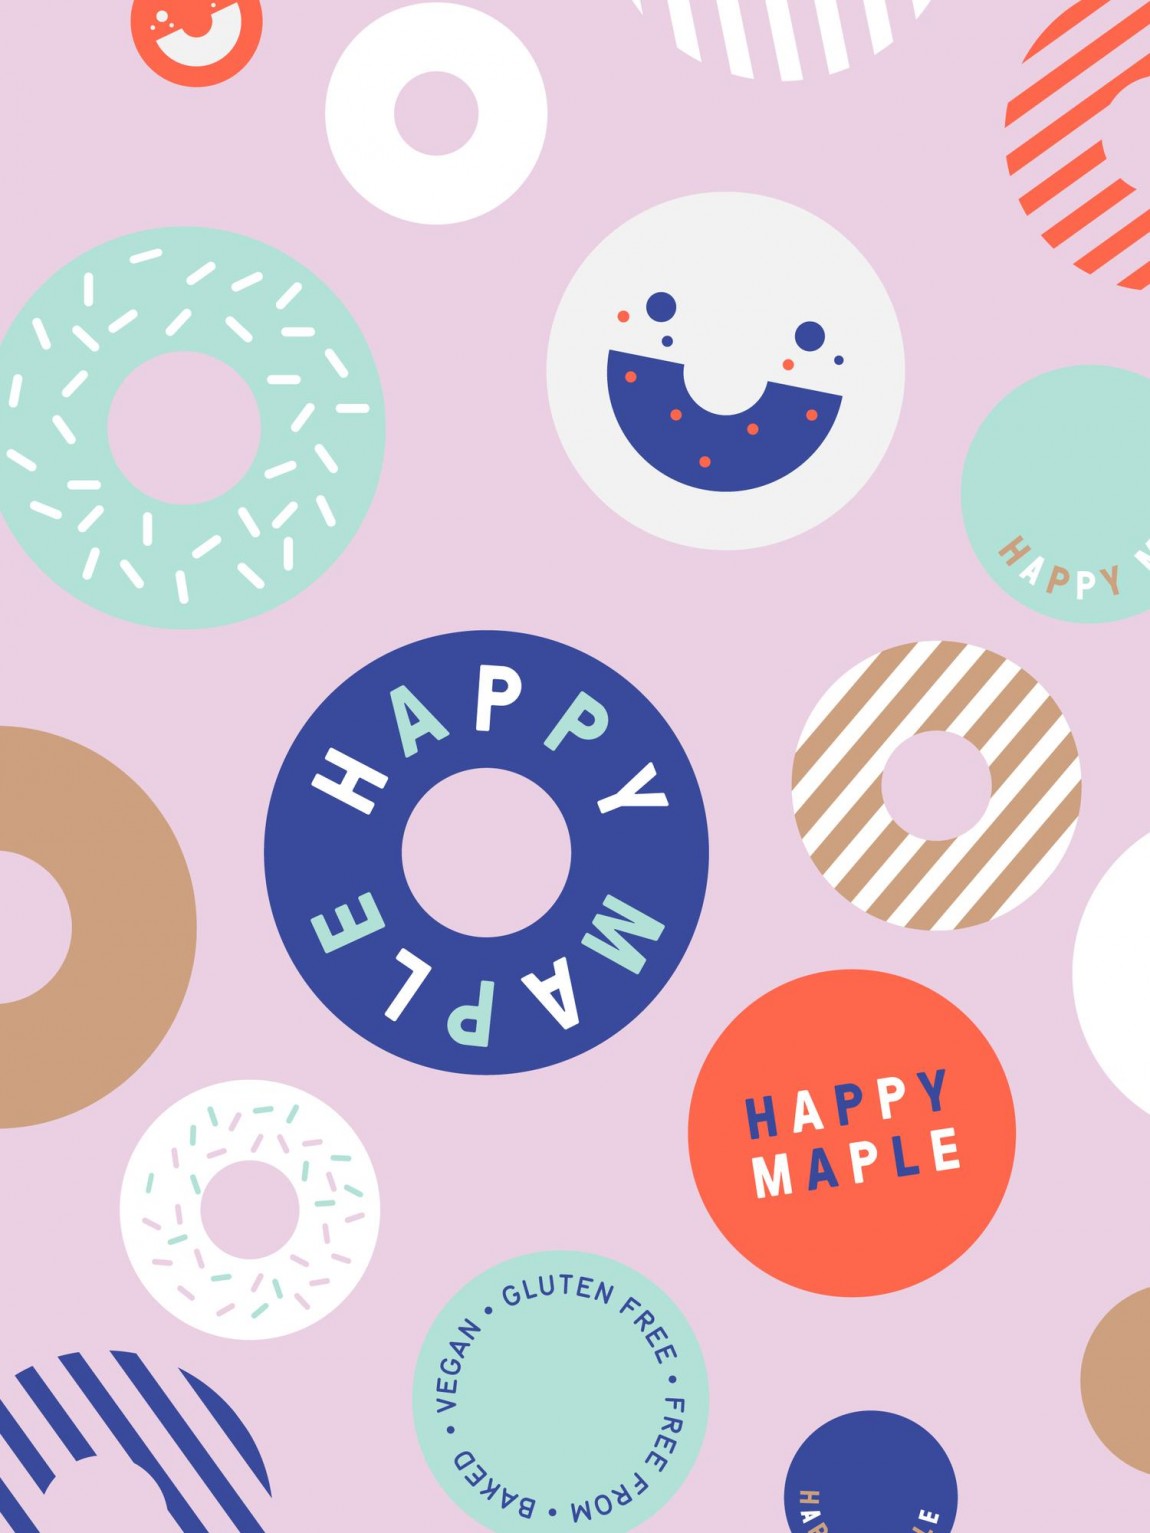 包房Happy Maple面包店连锁品牌形象设计，标志图形延展应用